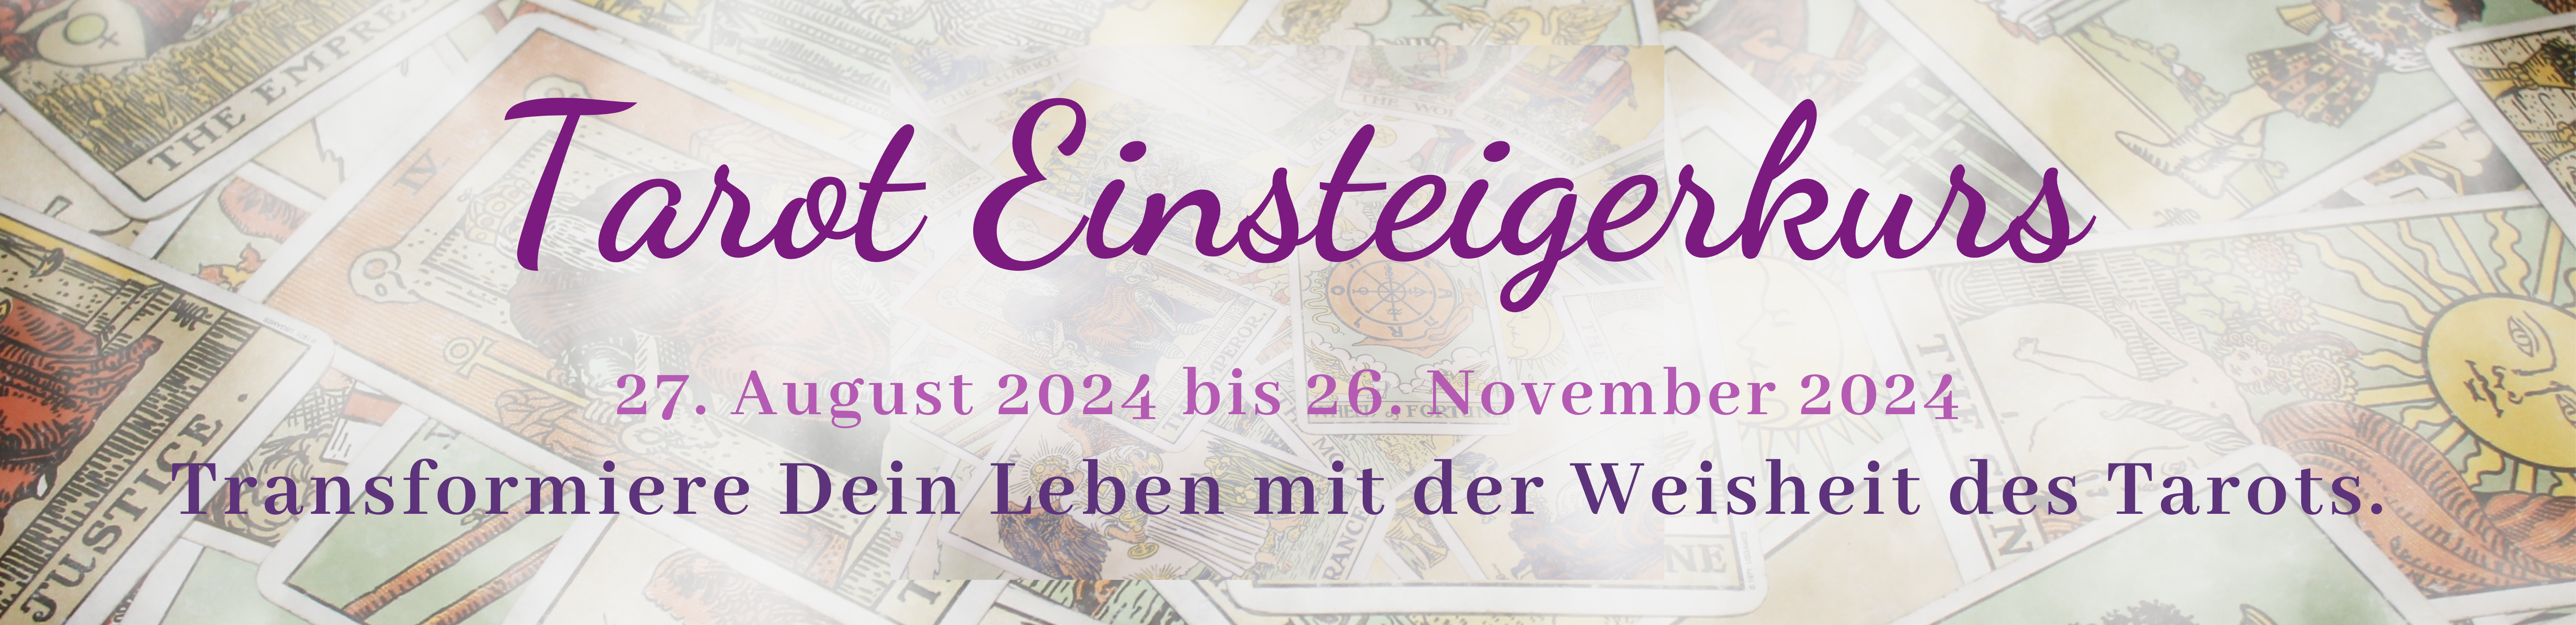 Tarot Einsteigerkurs 27.08. bis 26.11.2024 Homepage Banner violett CANVA